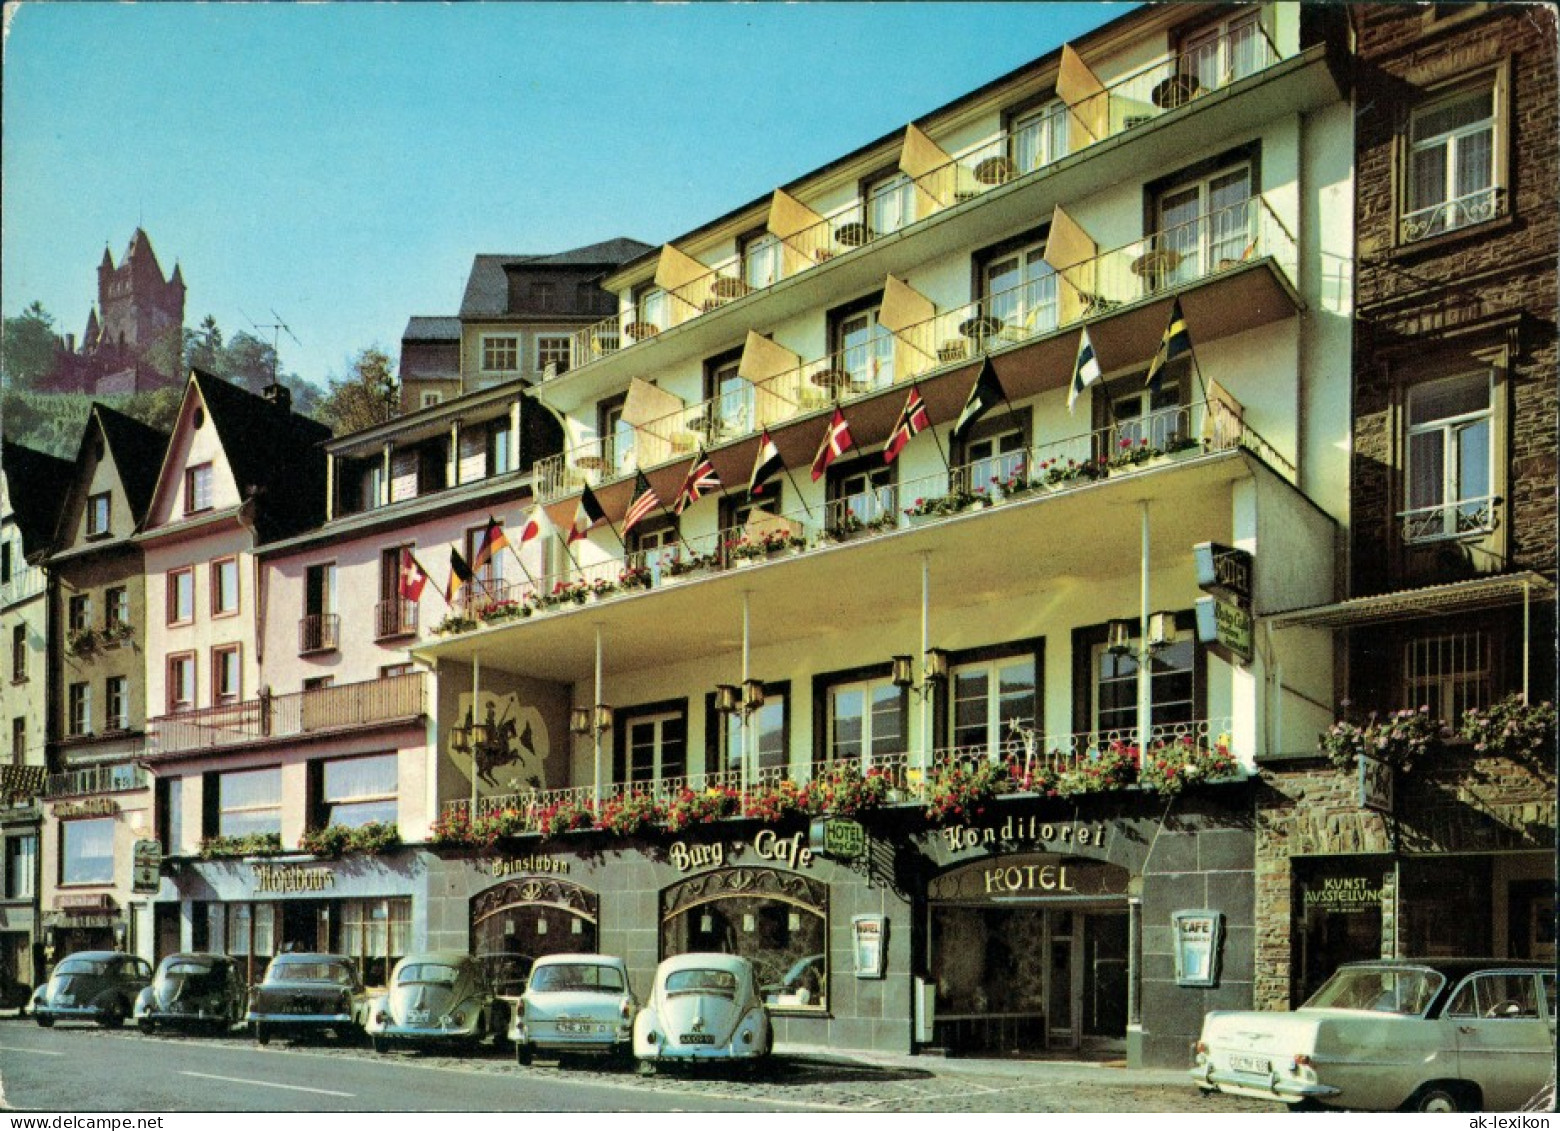 Cochem Kochem Burg-Hotel Café Moselpromenade VW Käfer Autos Davor 1970 - Cochem